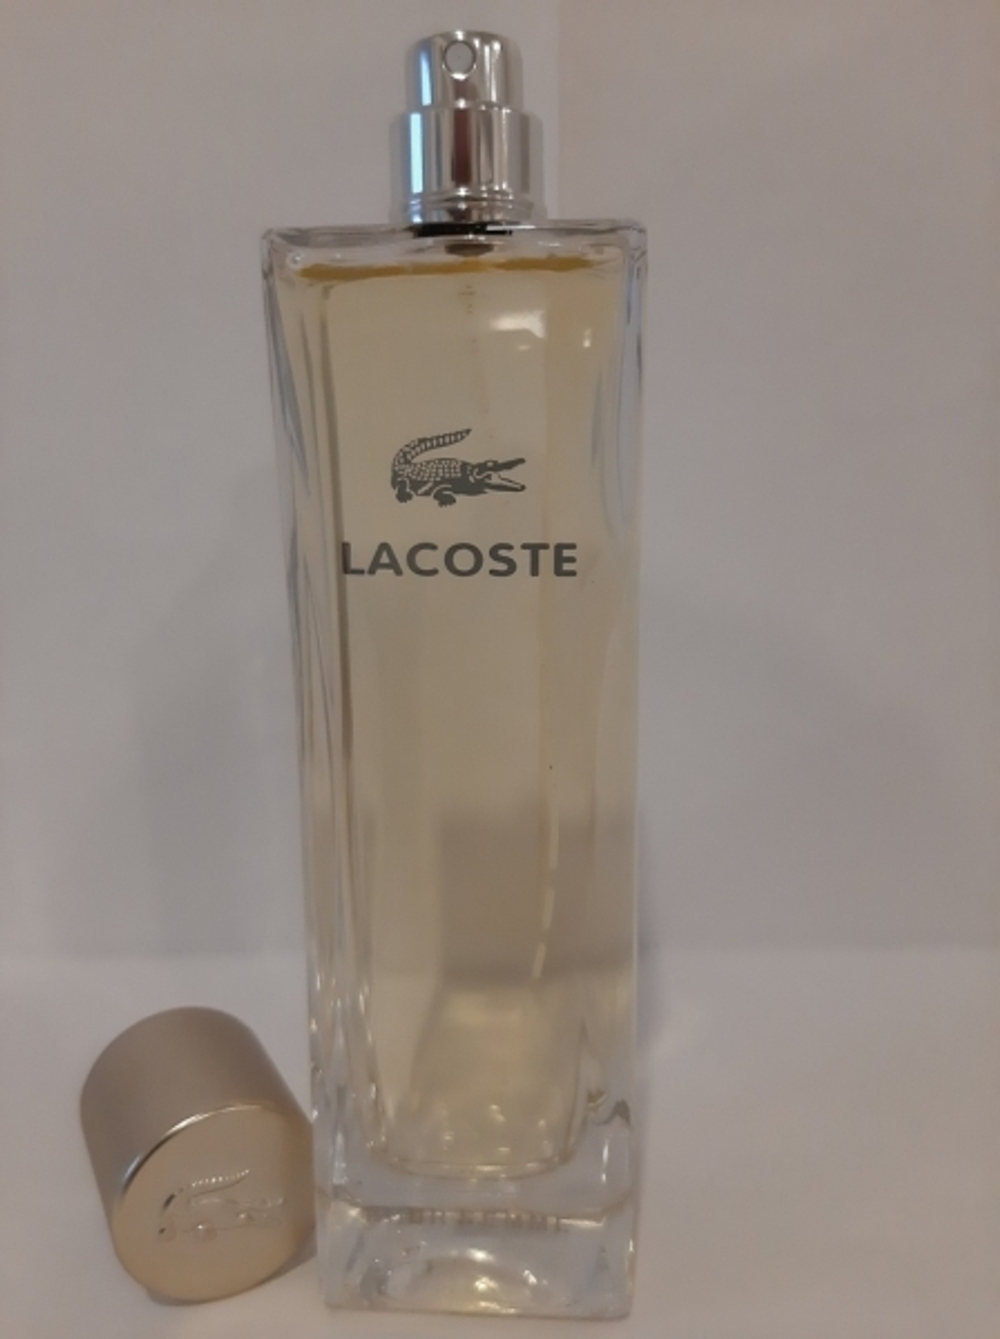 Lacoste Pour Femme 90ml (duty free парфюмерия)